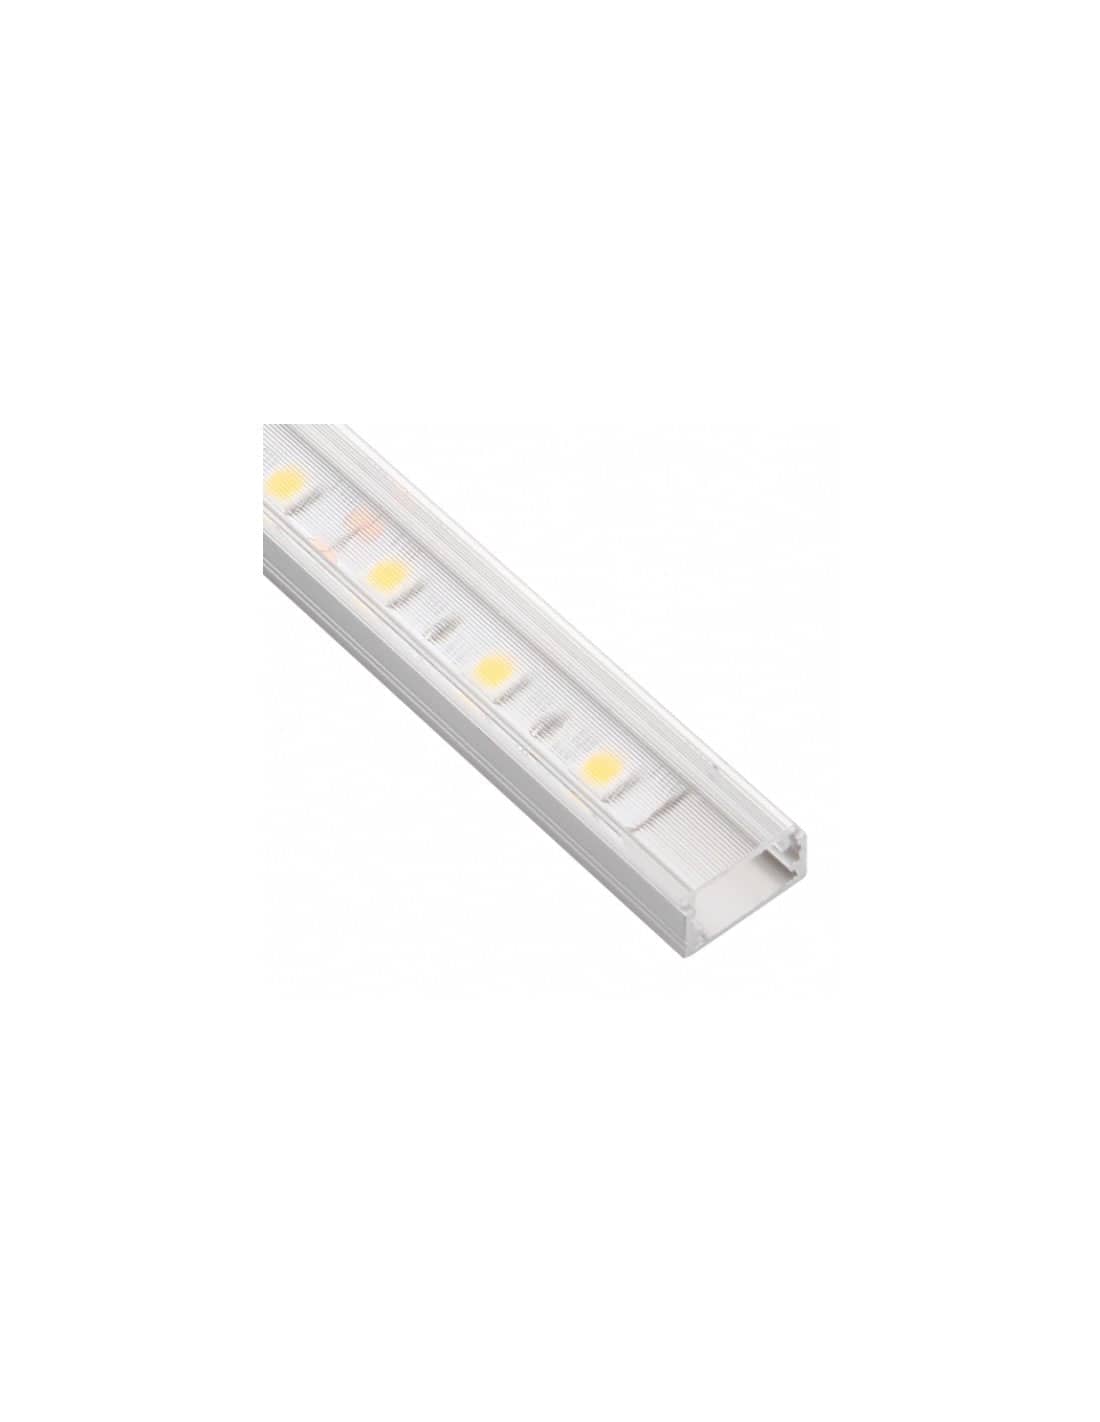 LED Profile LINE XL 2m Aluminum ( Transparent )    PROF-LINEXL-TR-2M-W